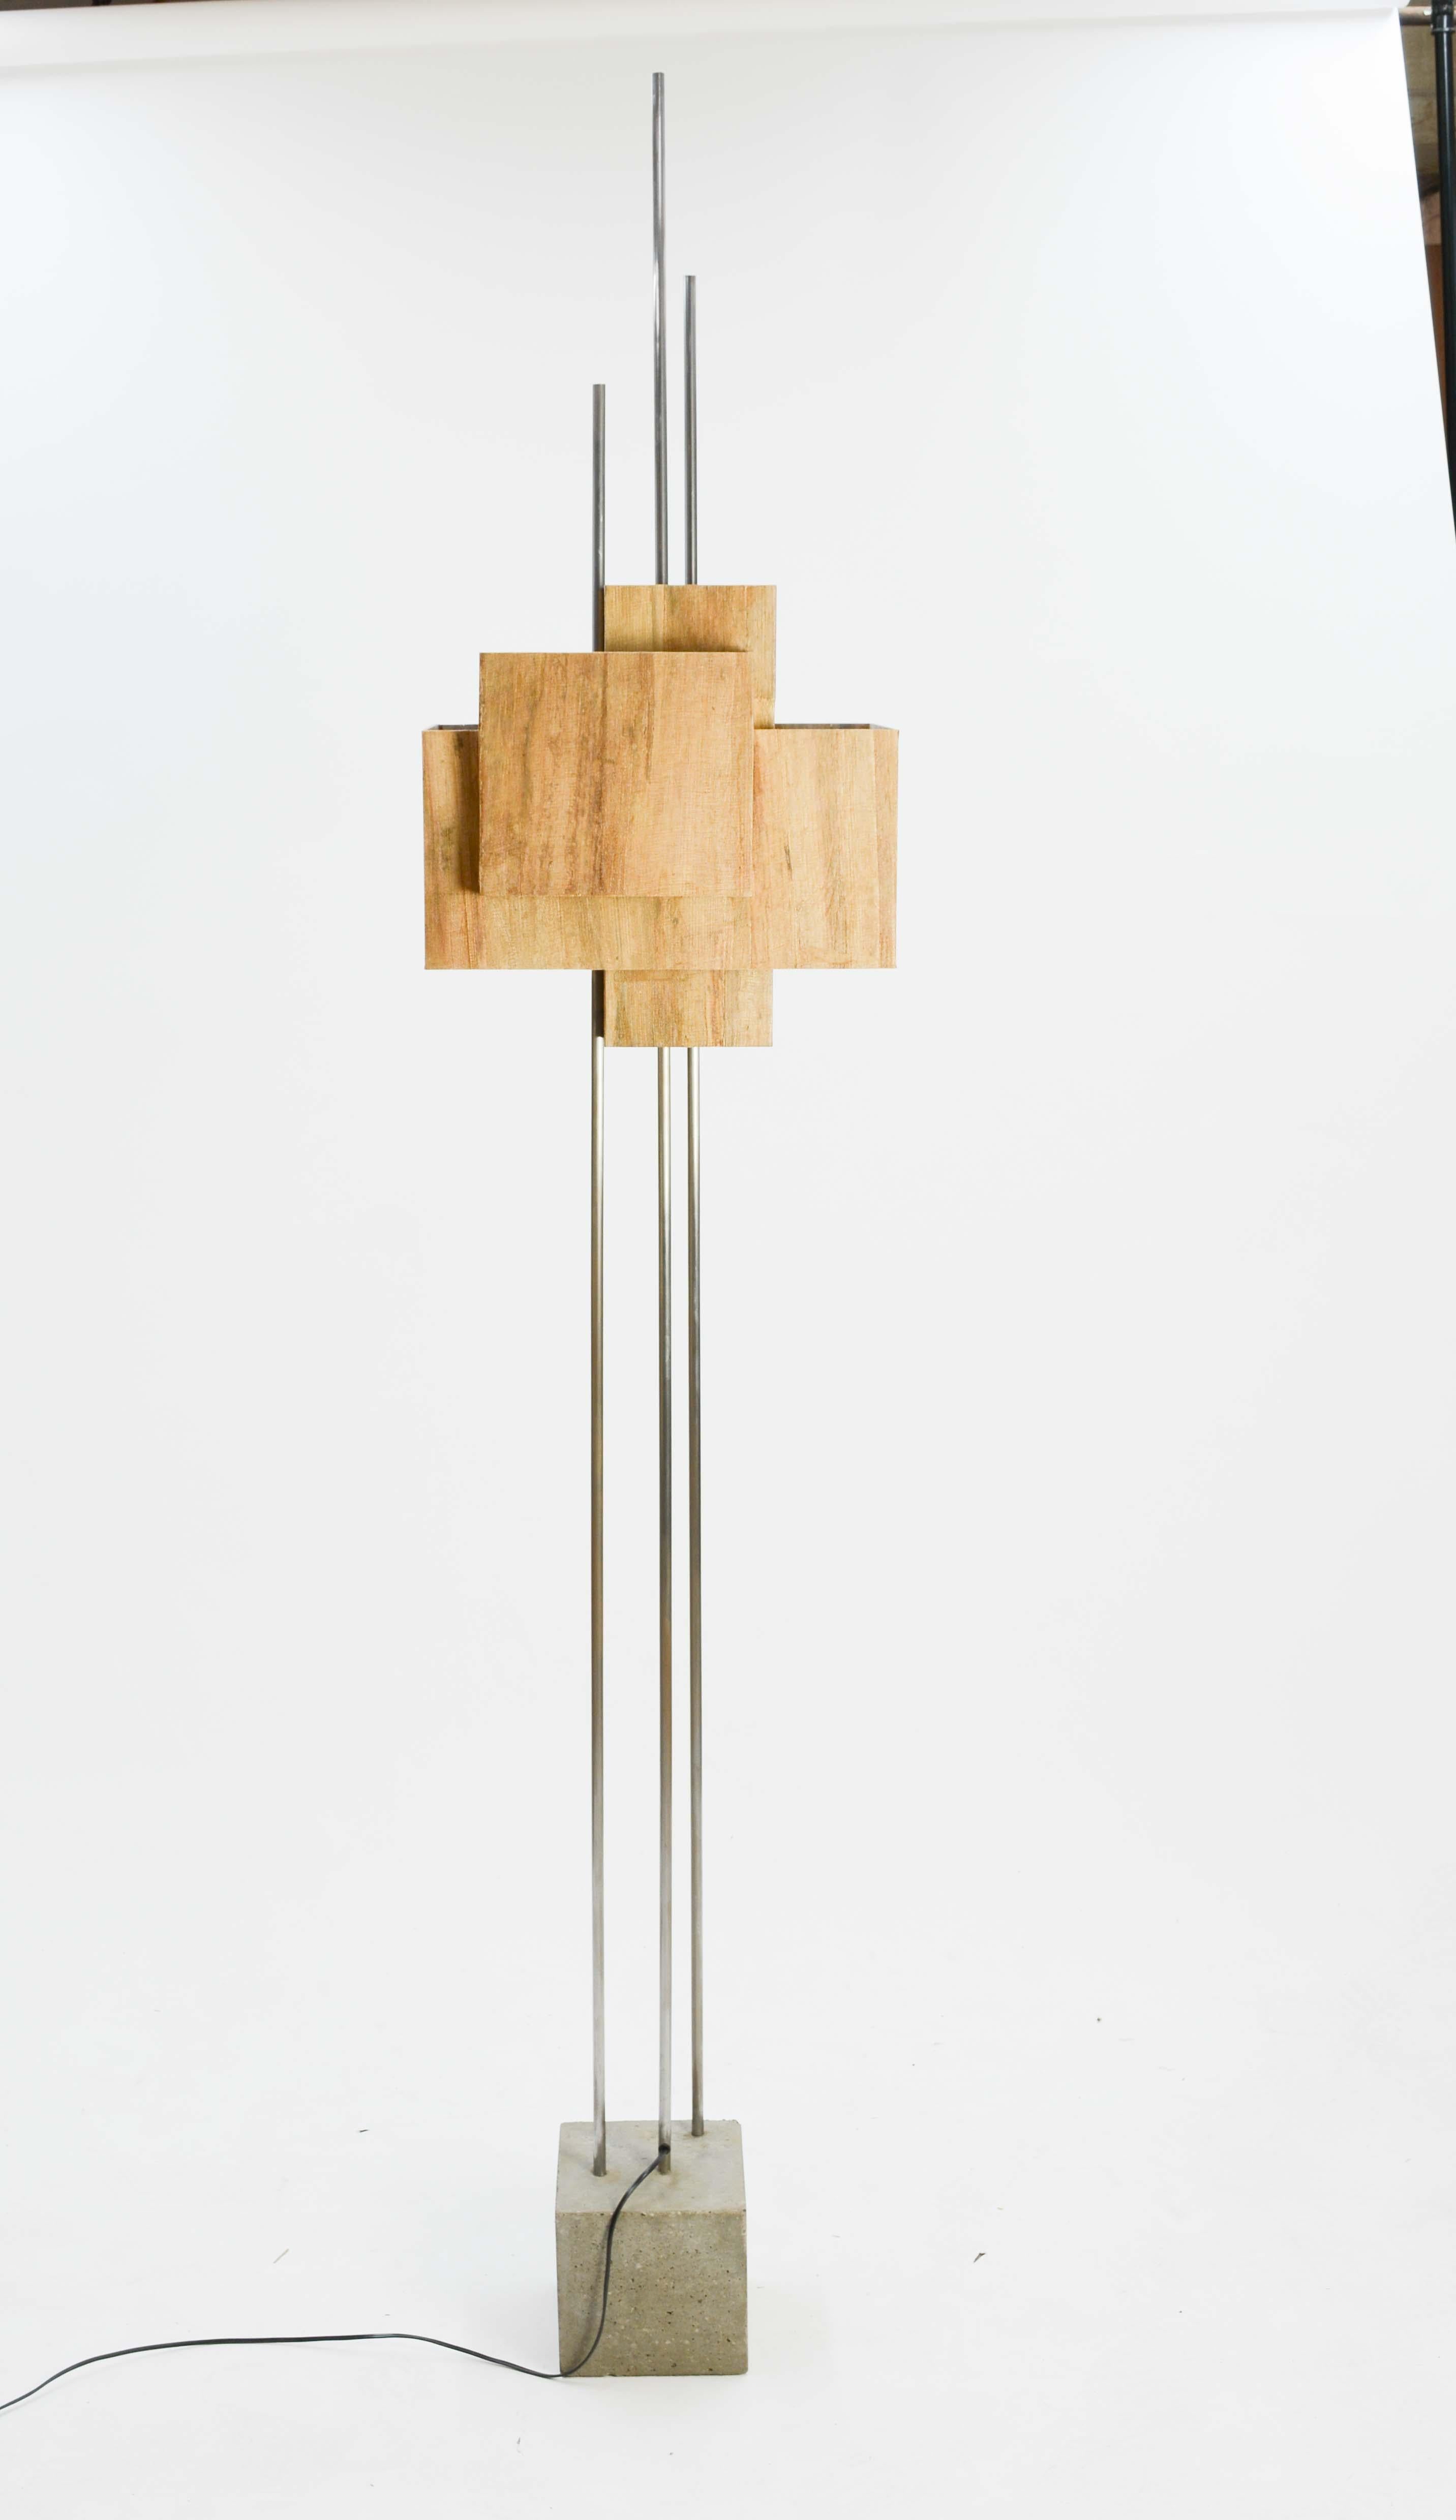 American Frank Lloyd Wright Inspired Floor Lamp by Lighting Artisan Jamie Voilette For Sale